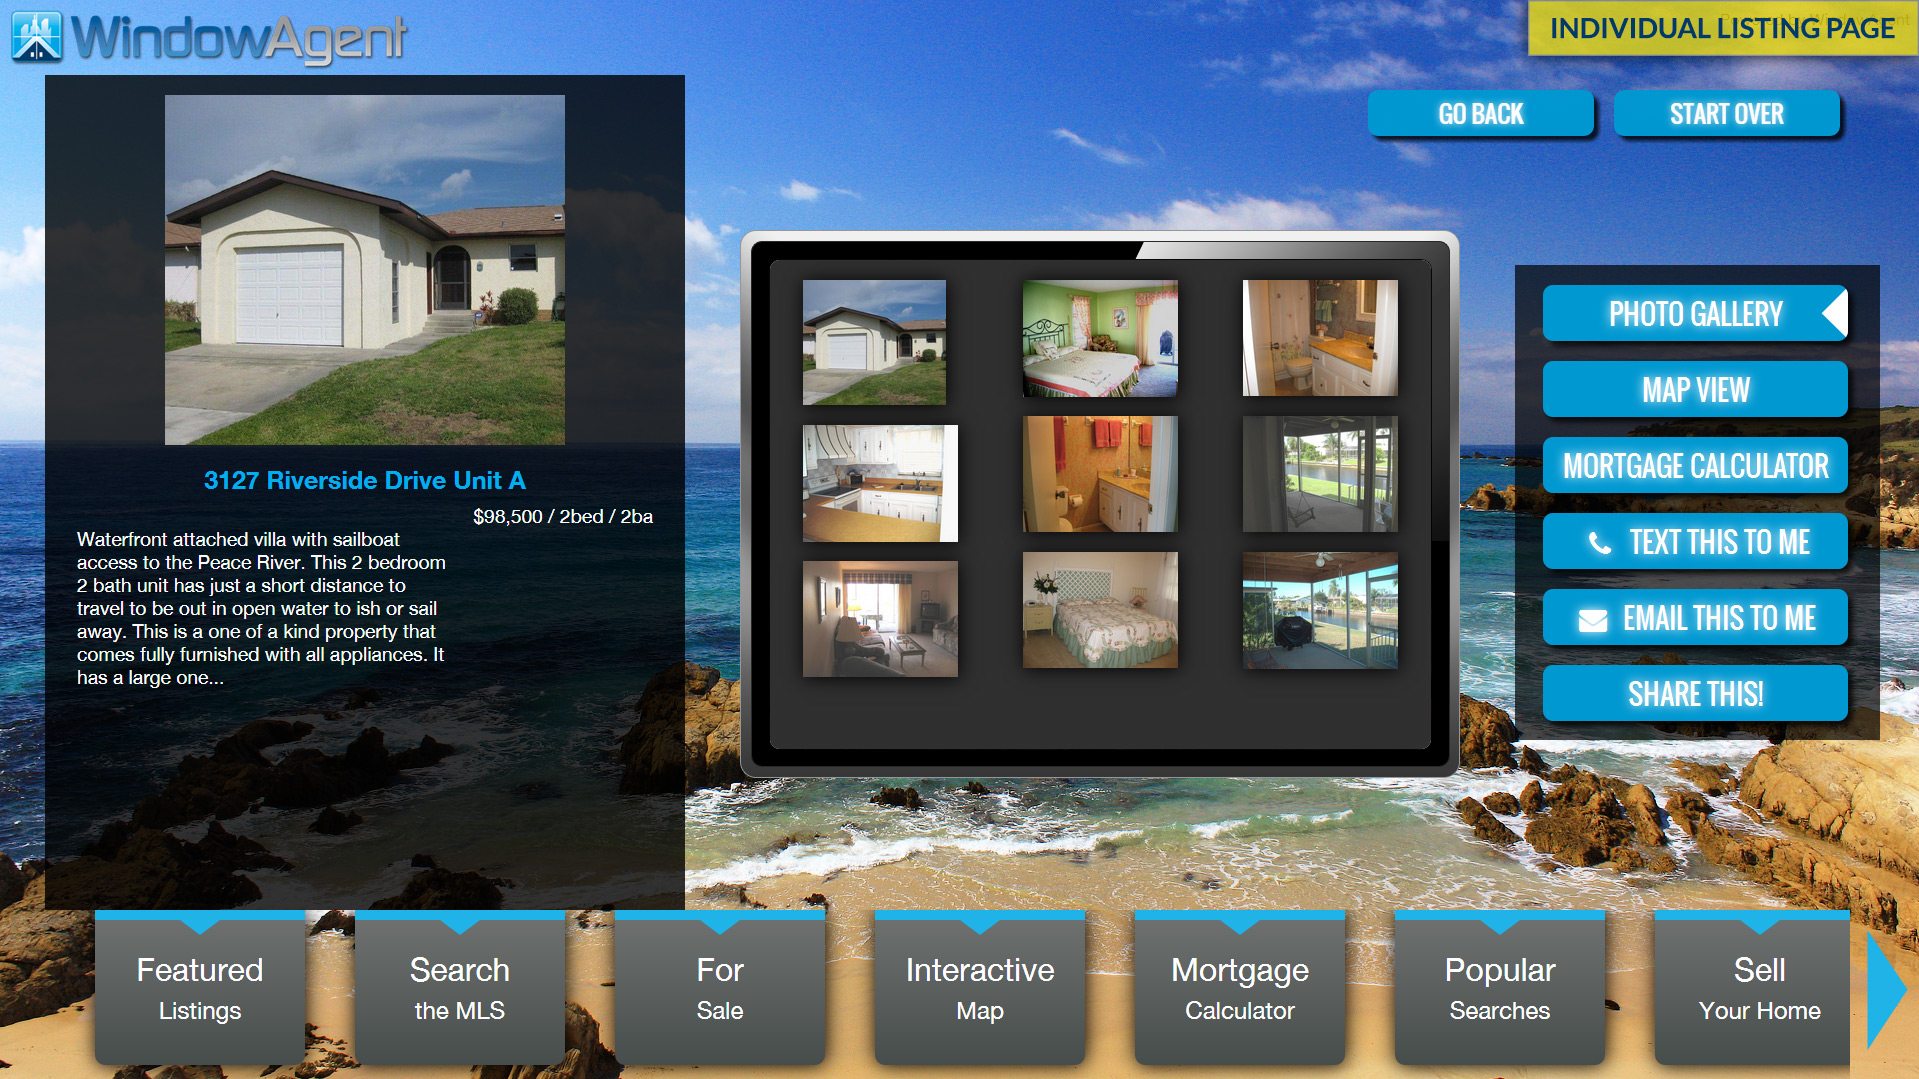 Windowagent marketing real estate software app design property details page